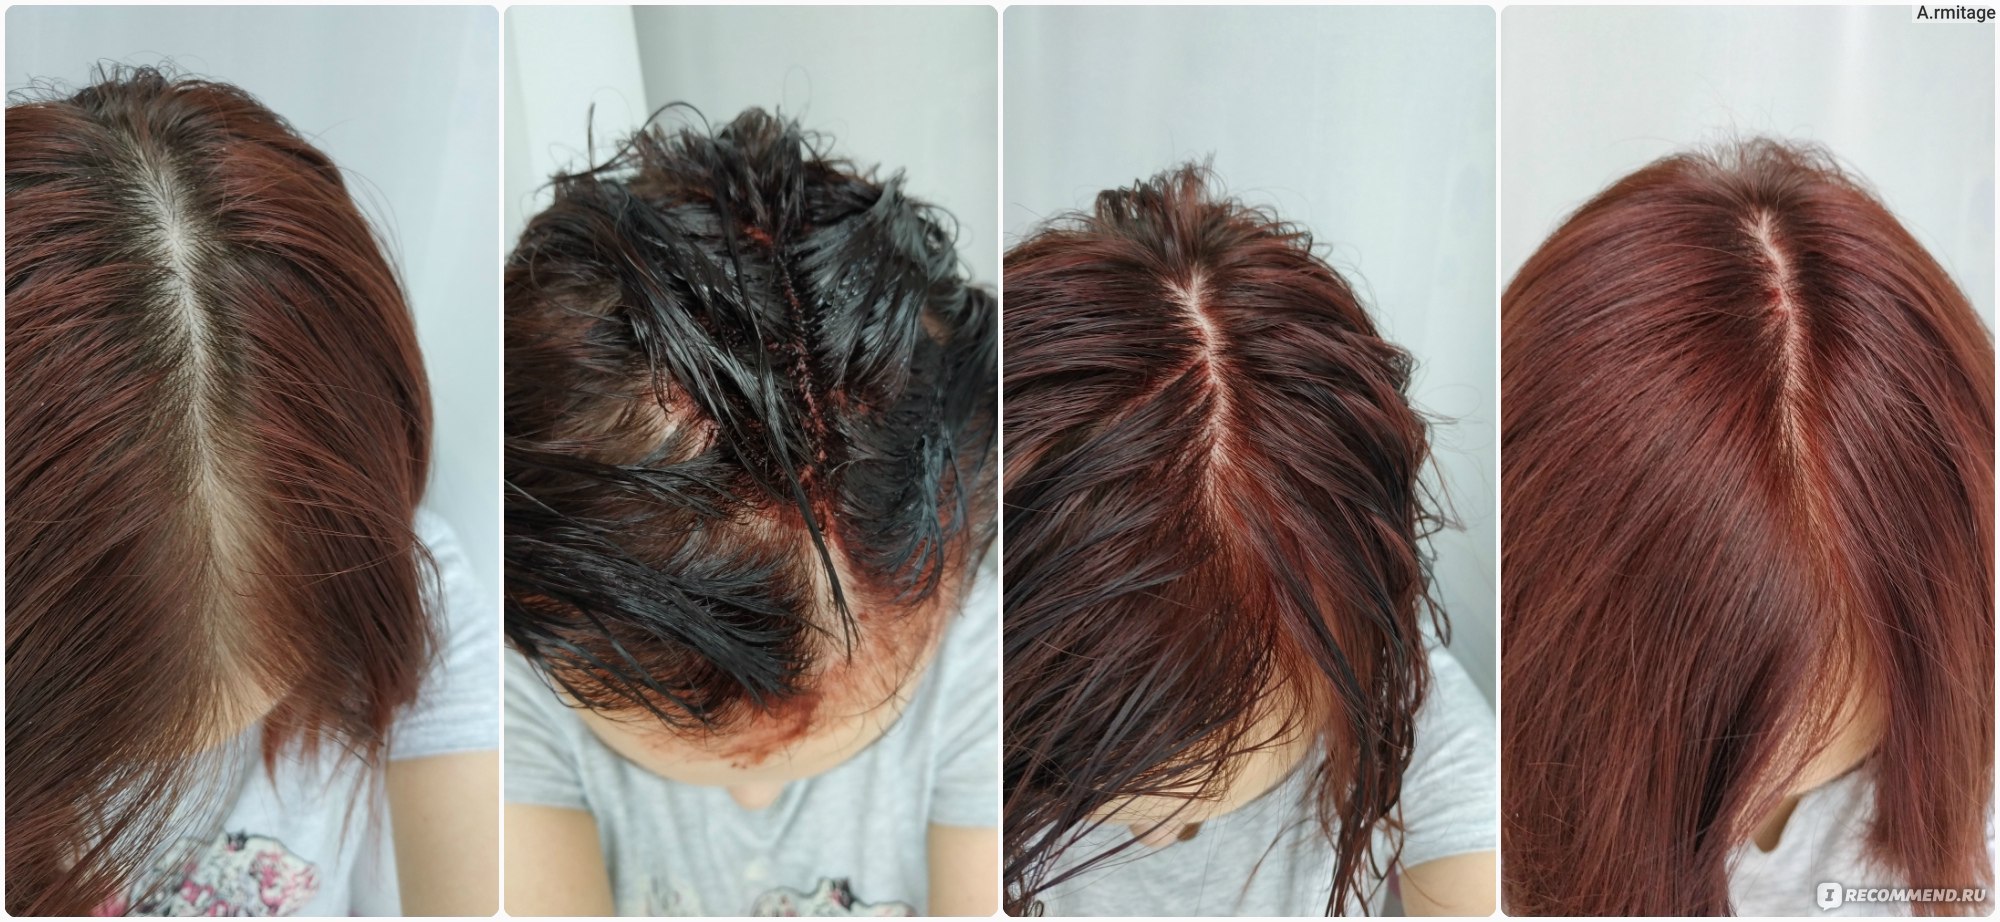 Как выровнять цвет волос оттеночным шампунем